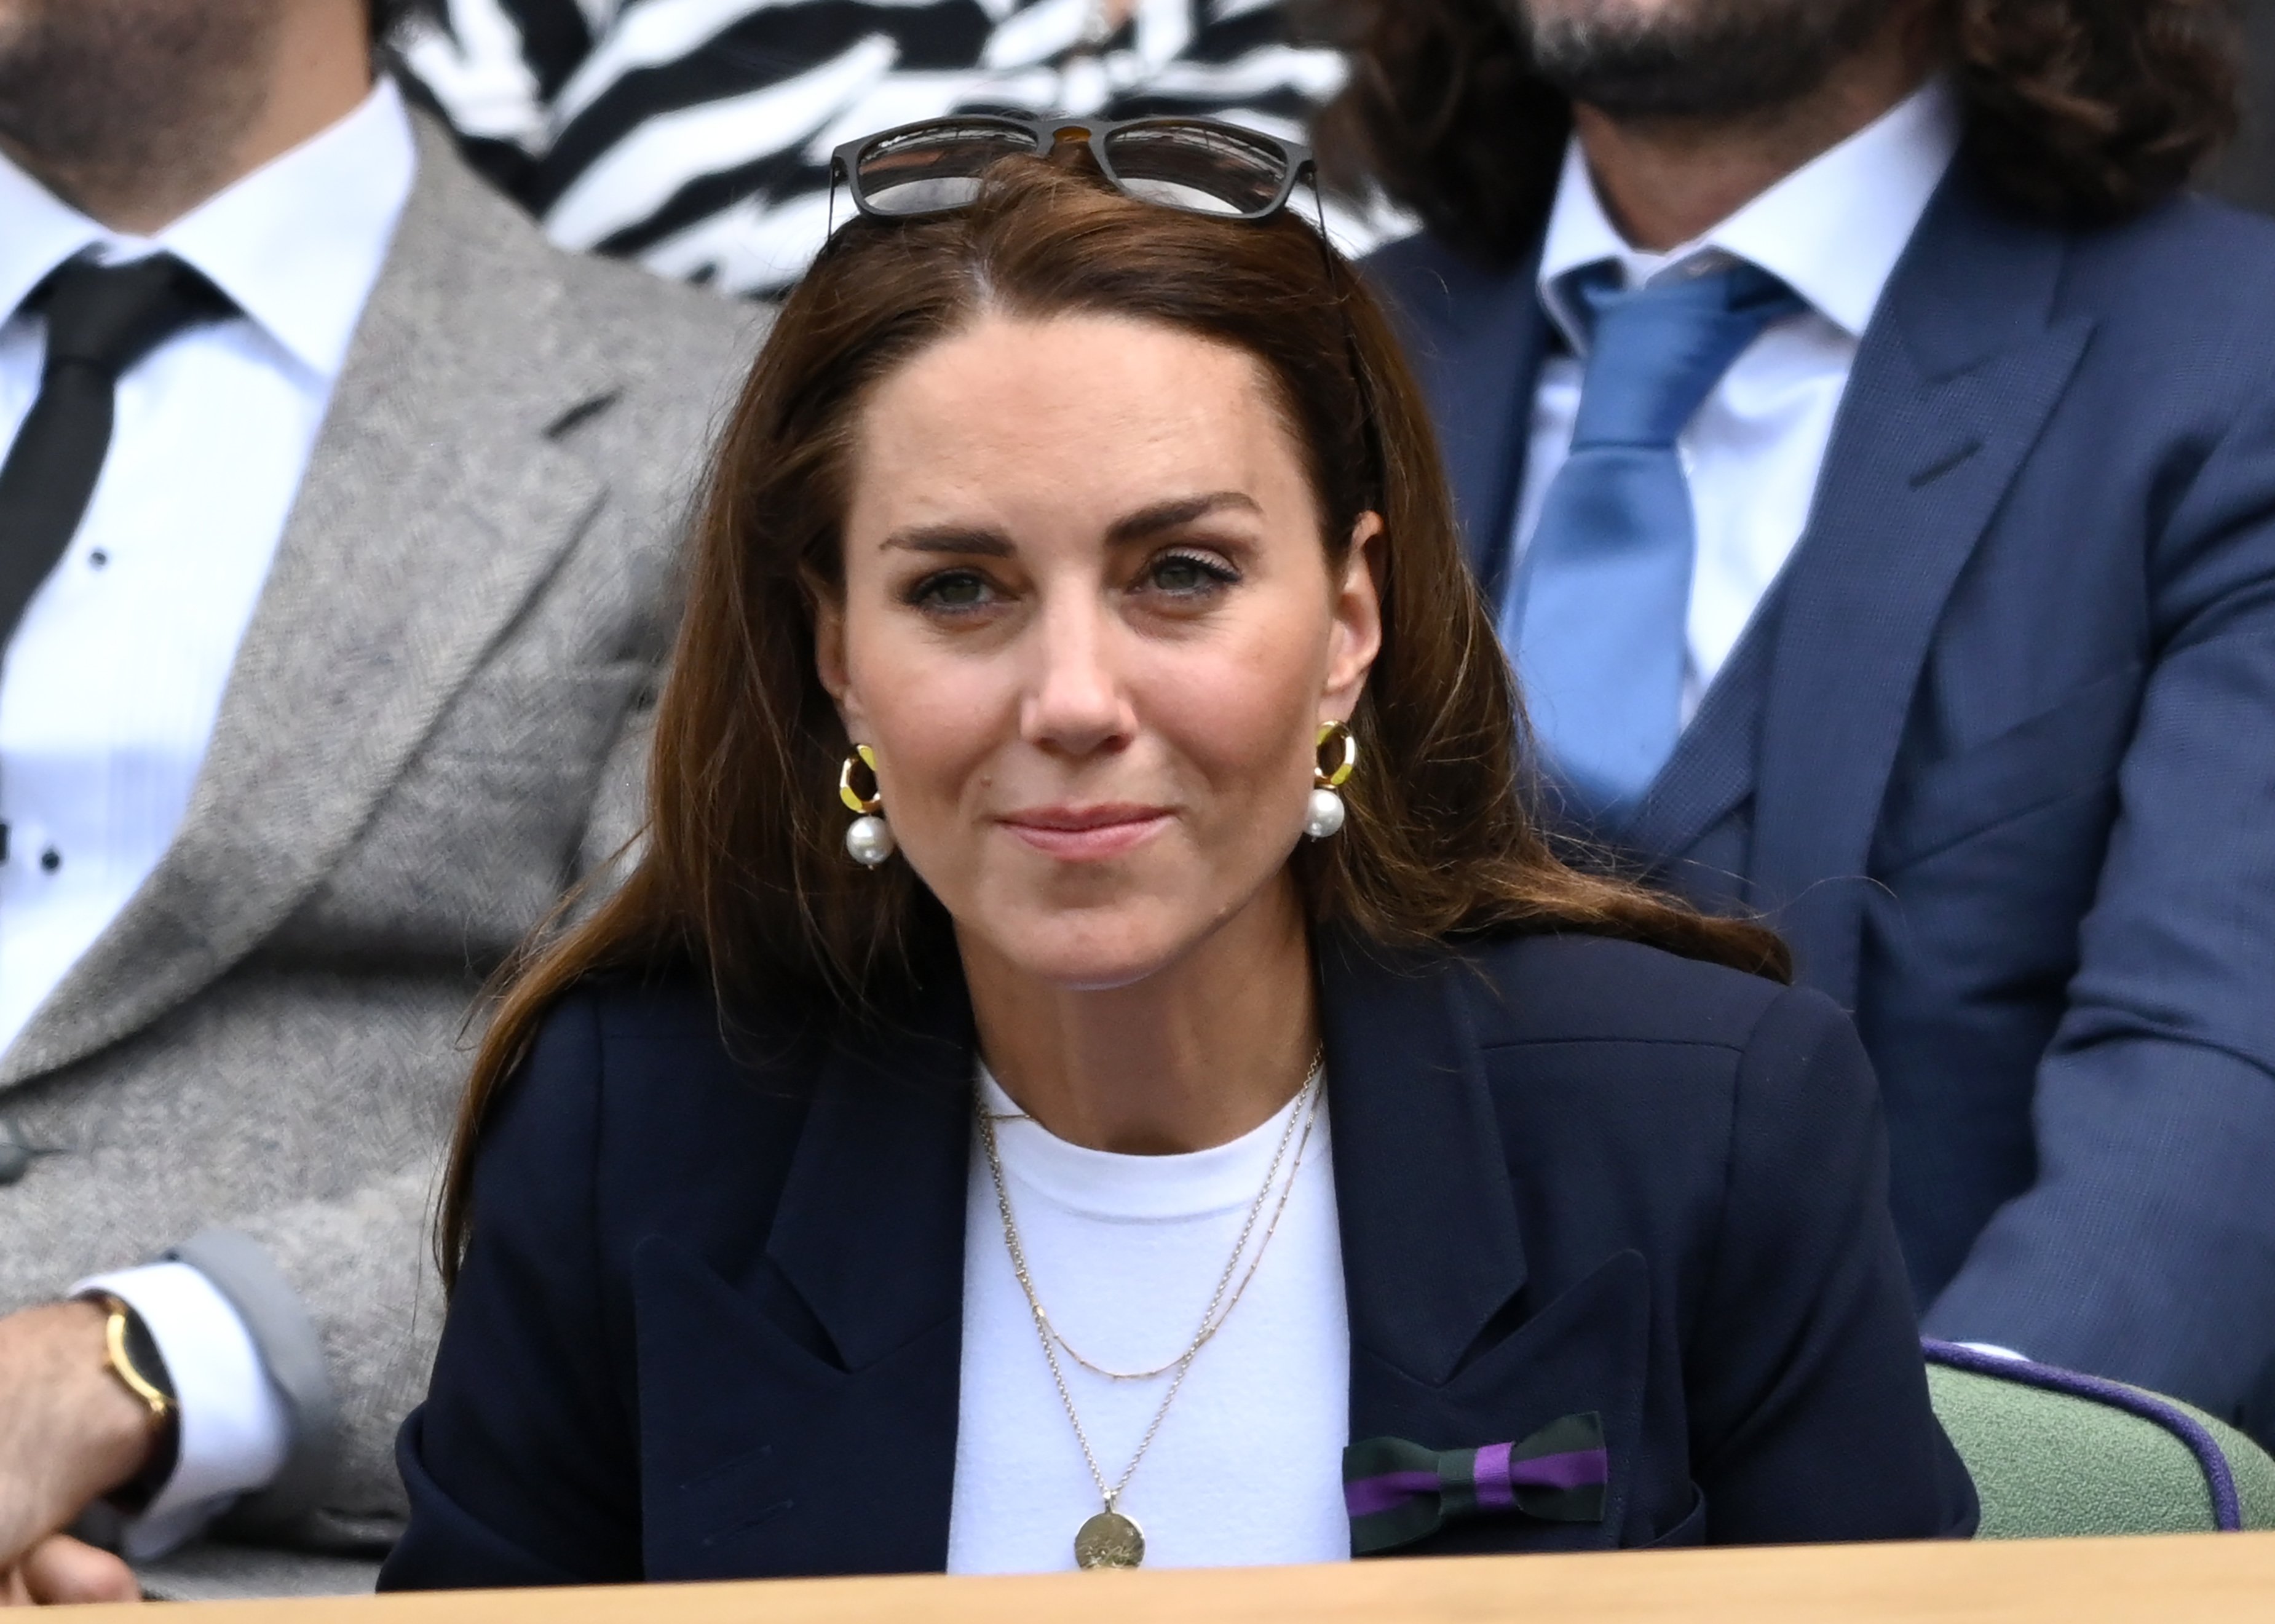 Herzogin von Cambridge Kate Middleton am 2. Juli 2021 in London England | Quelle Getty Images